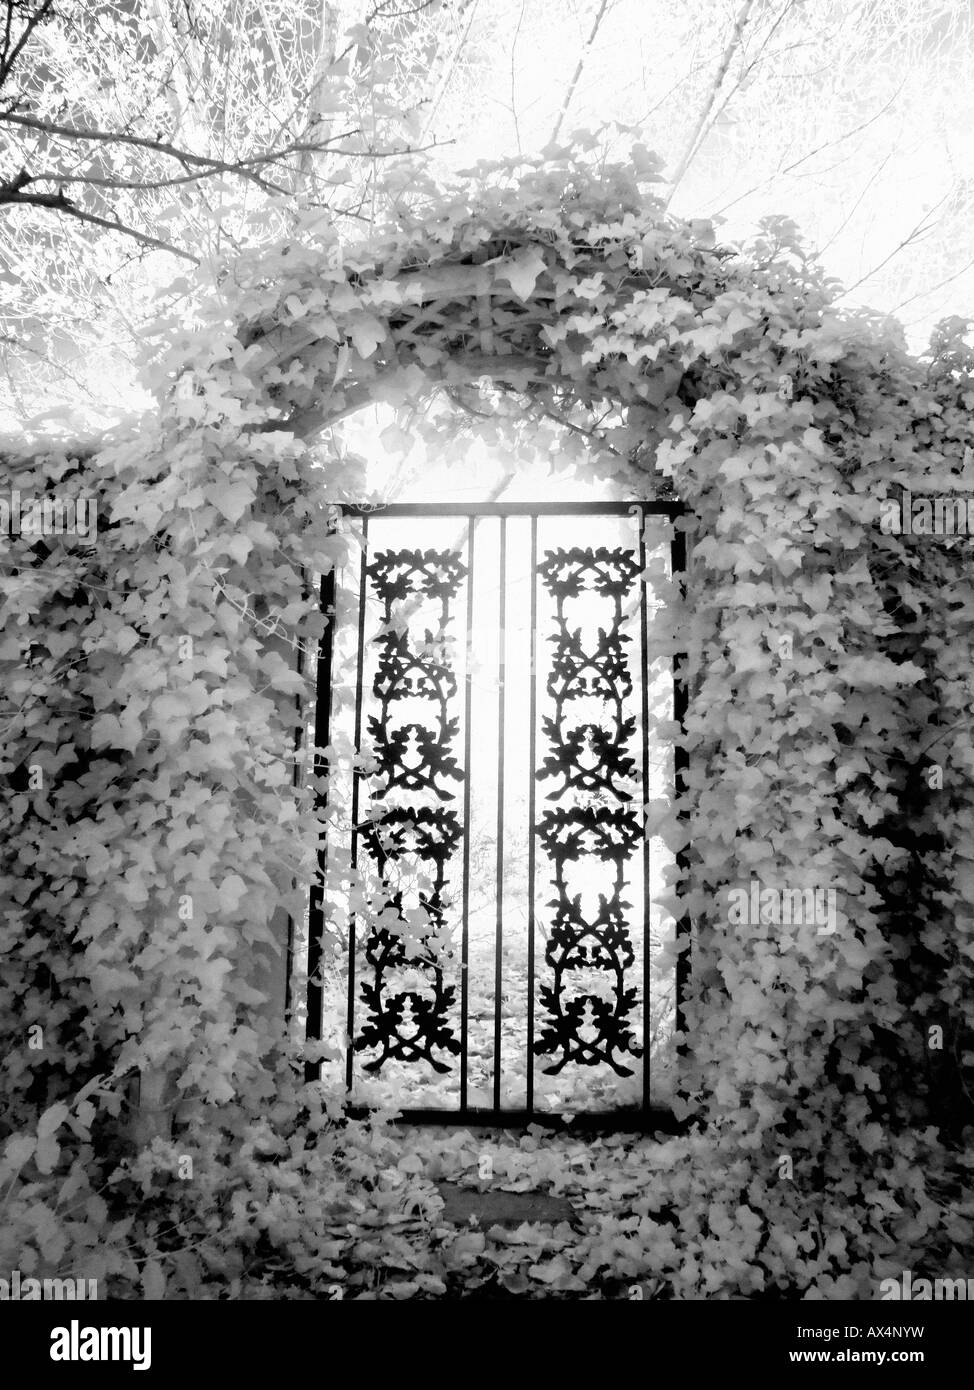 Porte d'entrée dans le feuillage photographié dans l'infrarouge Banque D'Images